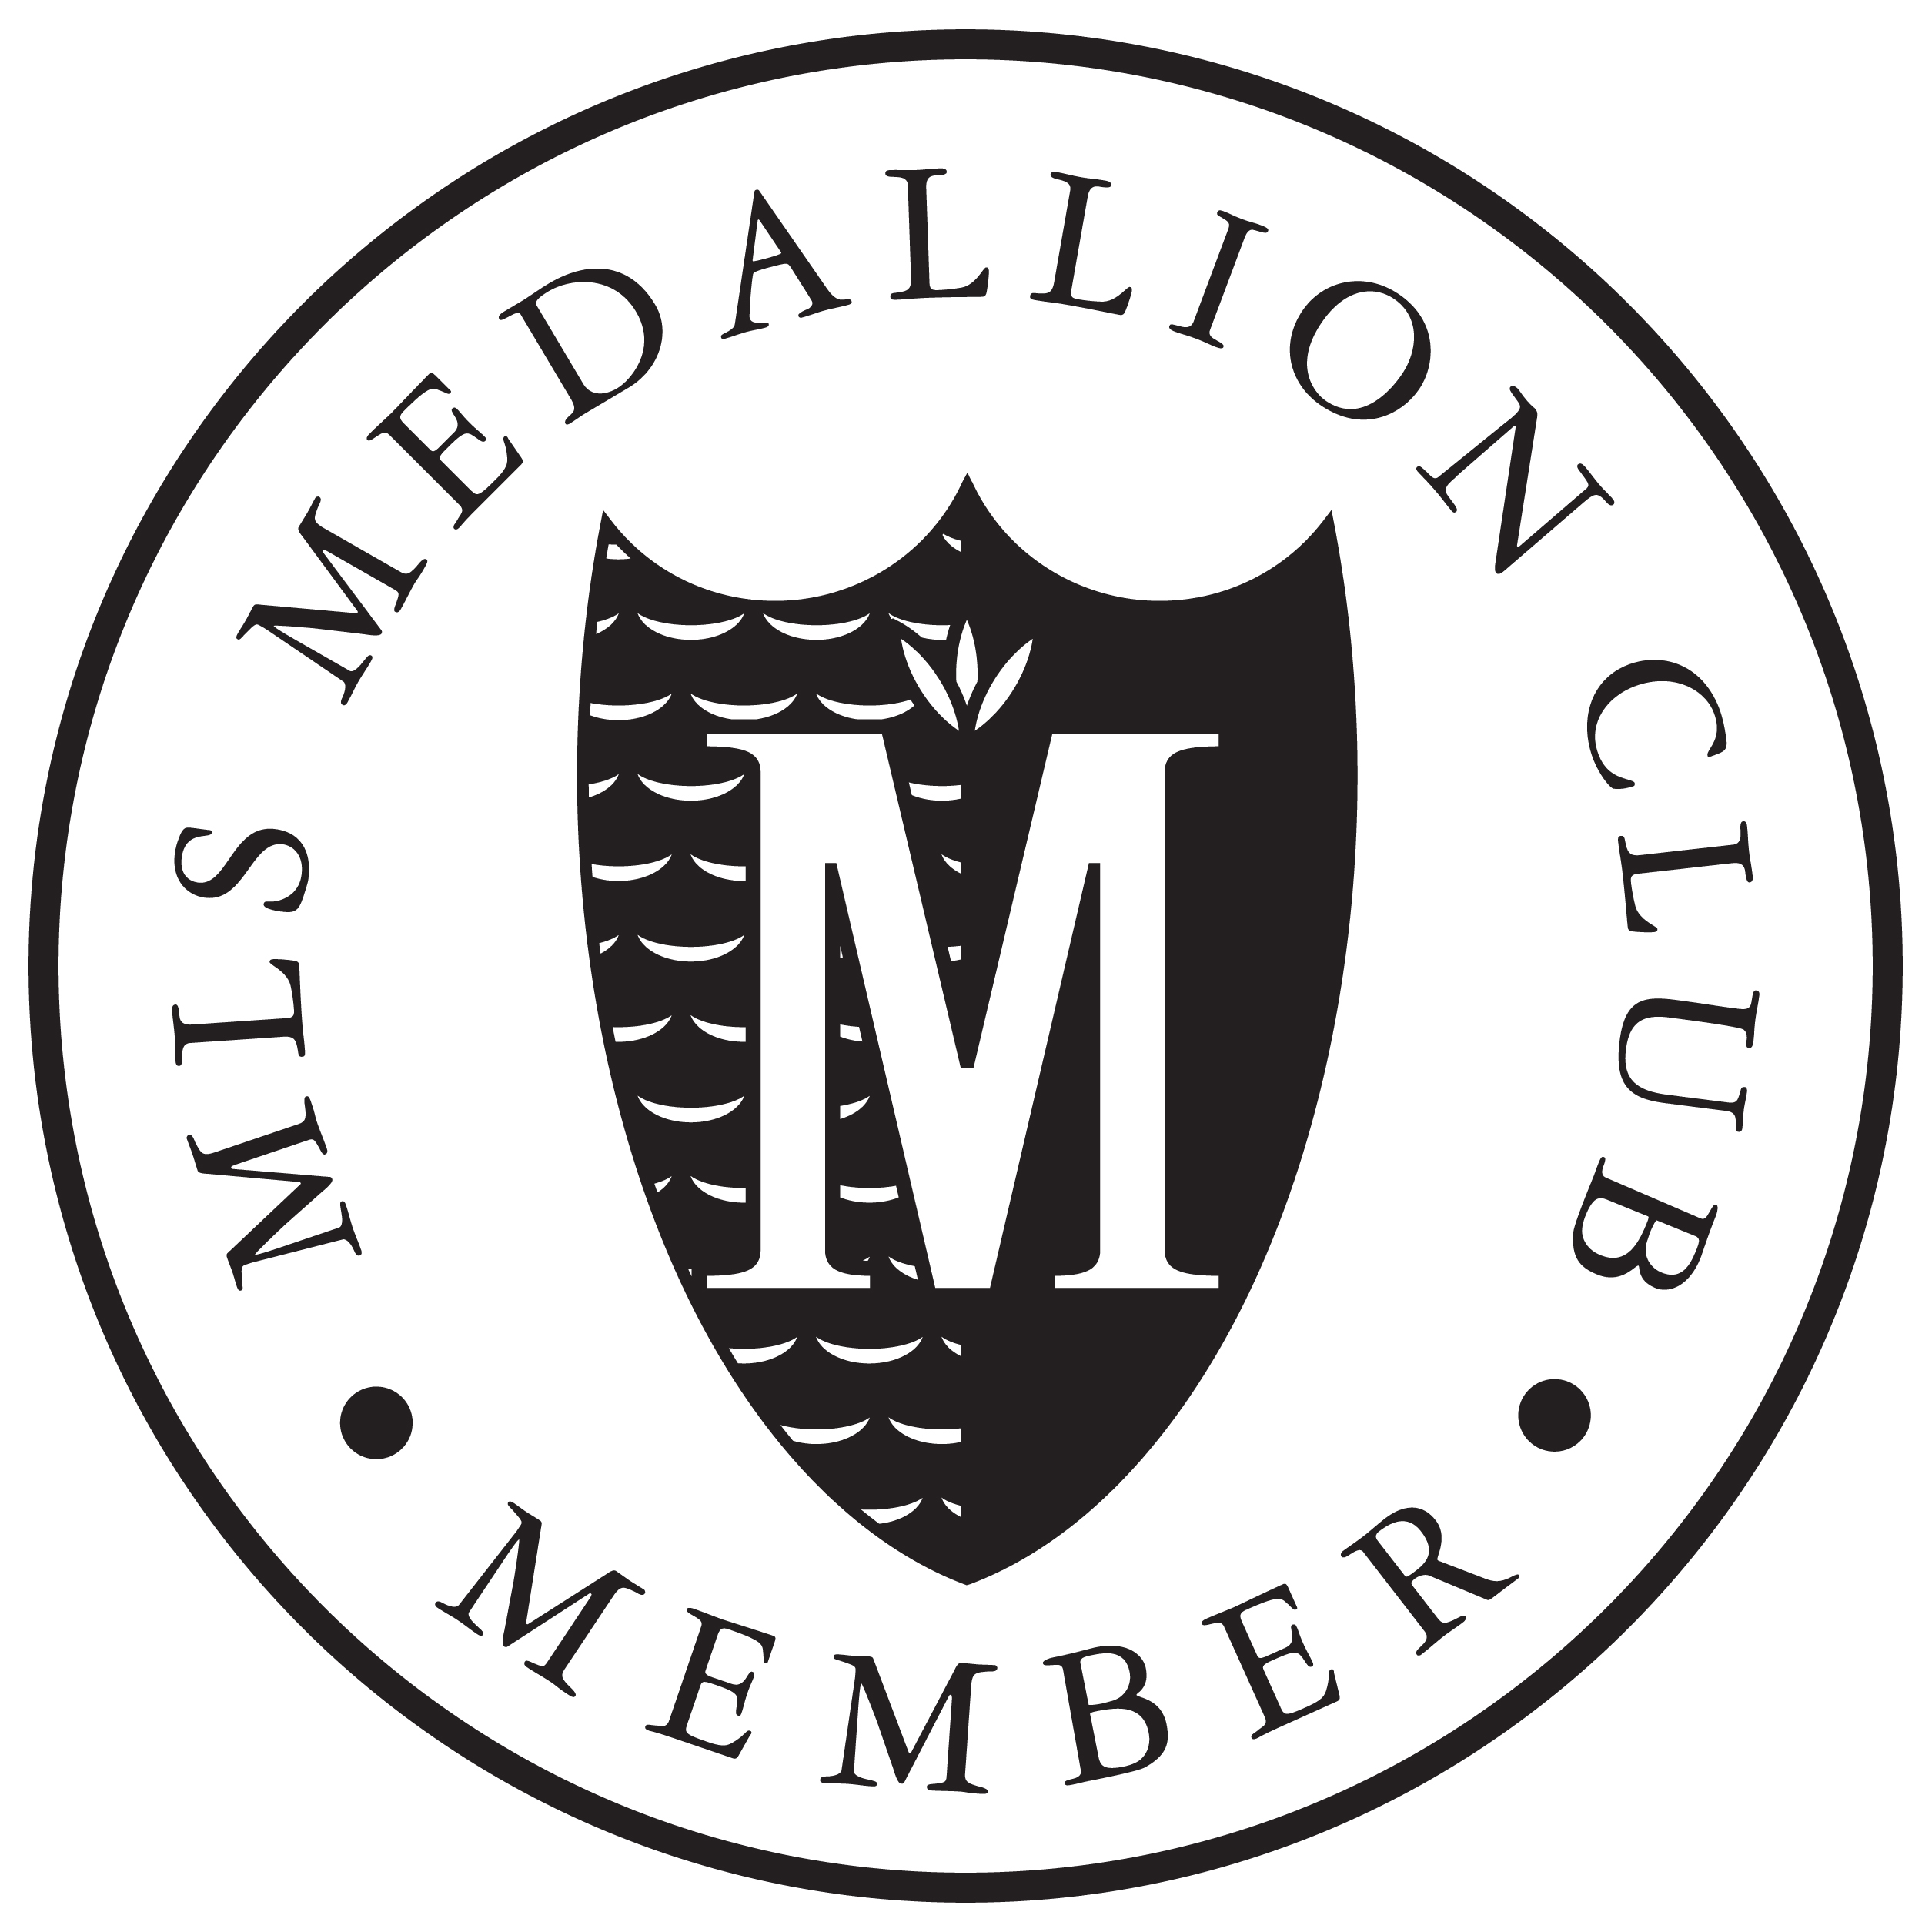 medallion logo